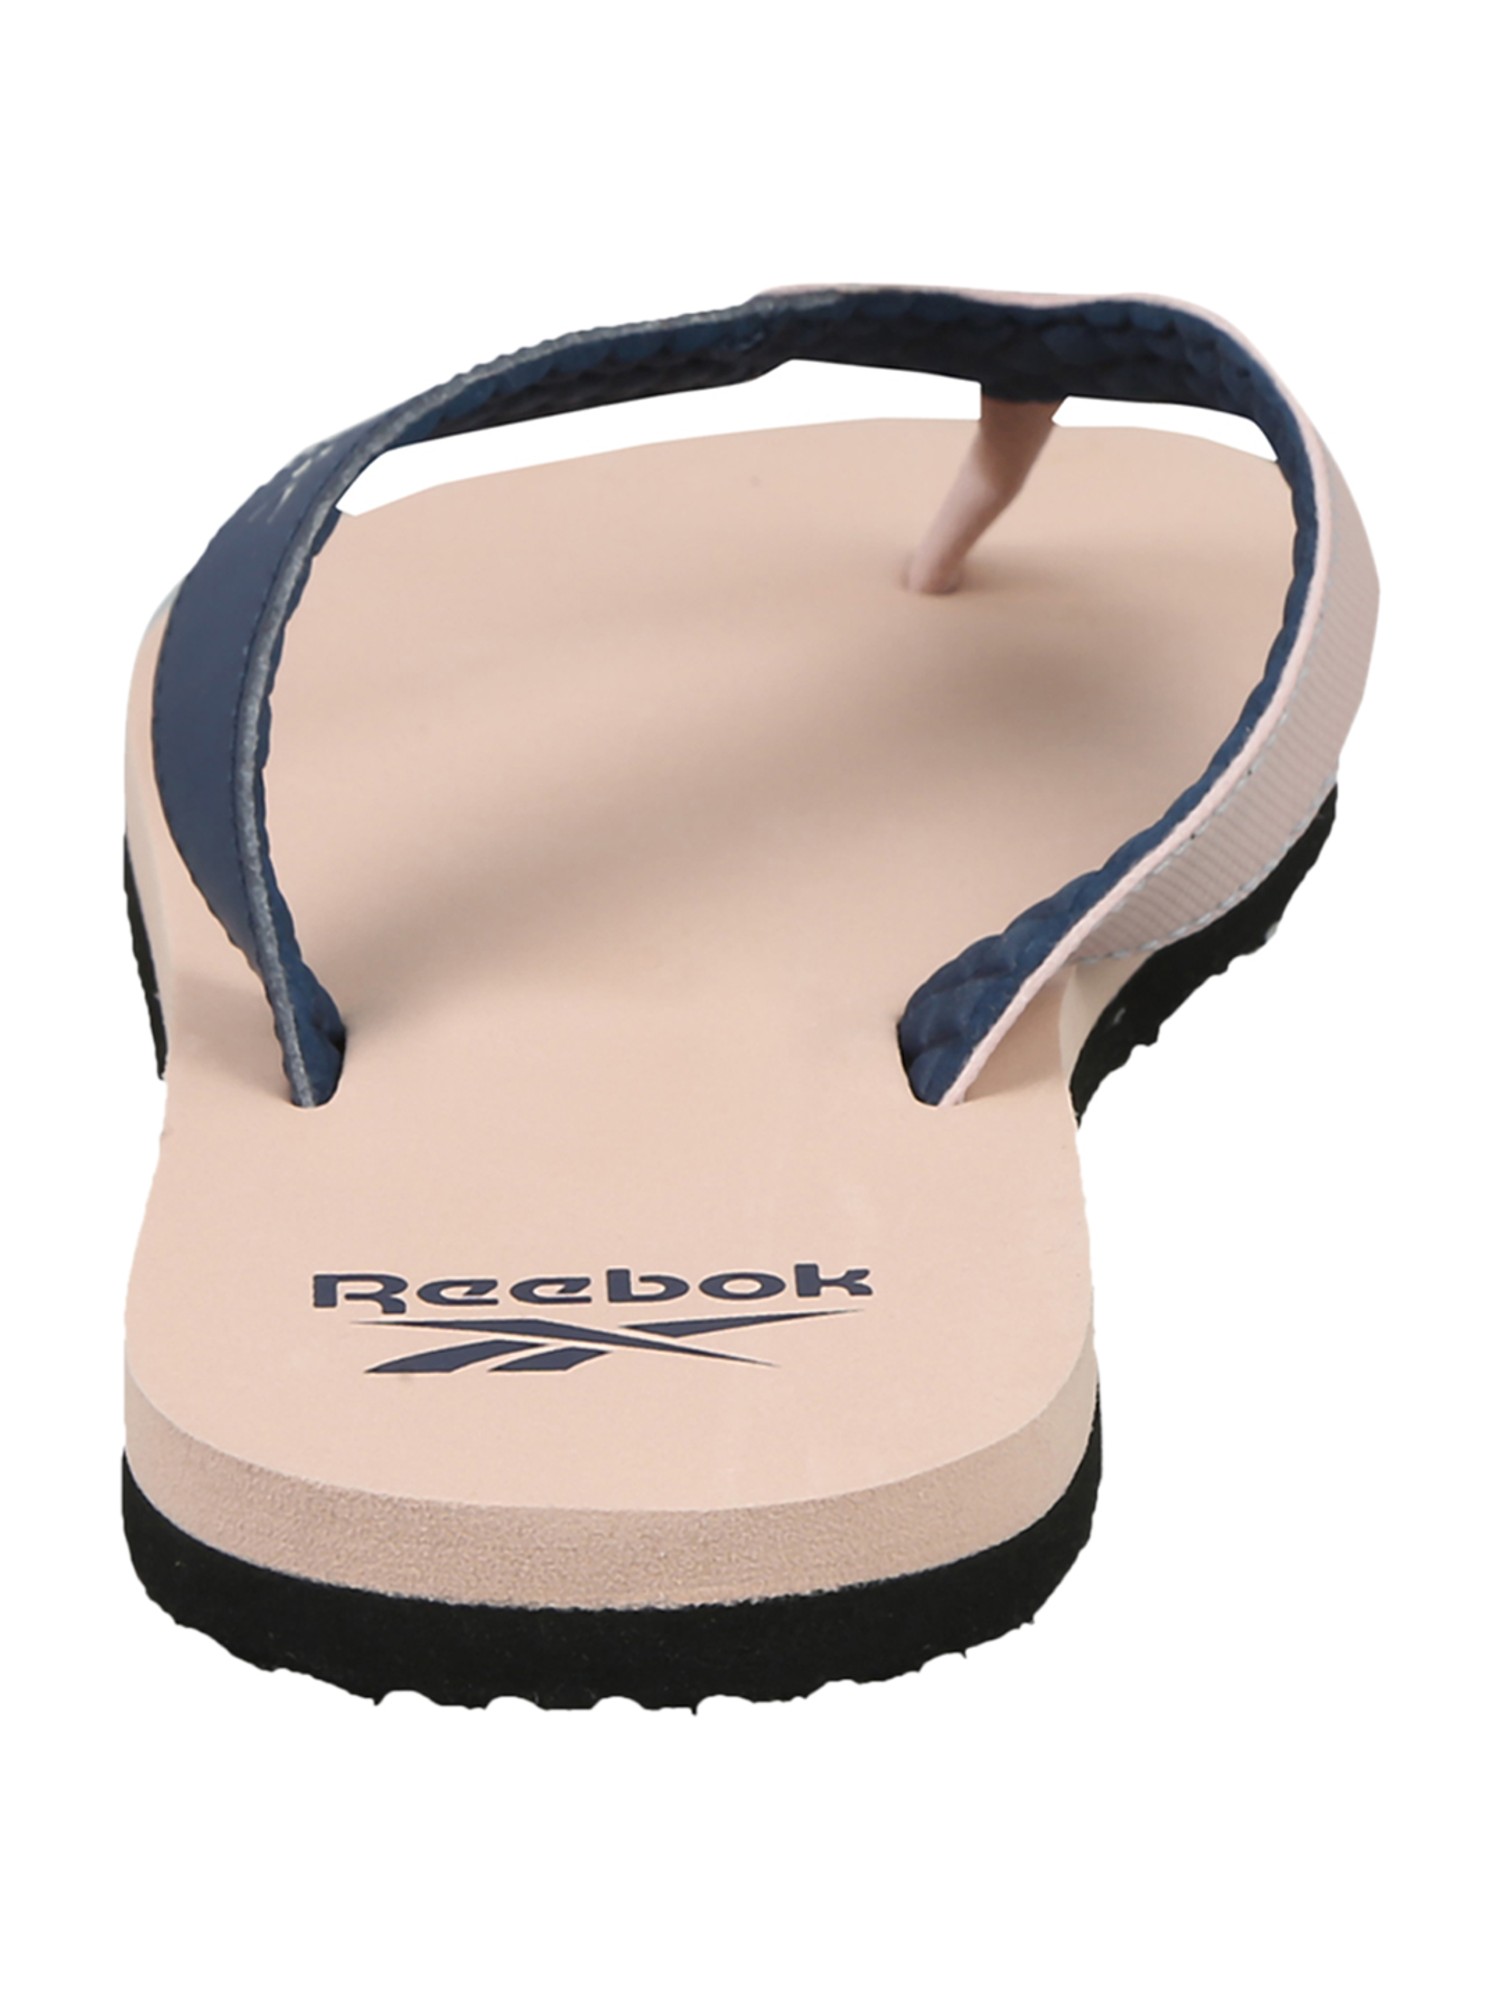 reebok core flip flops